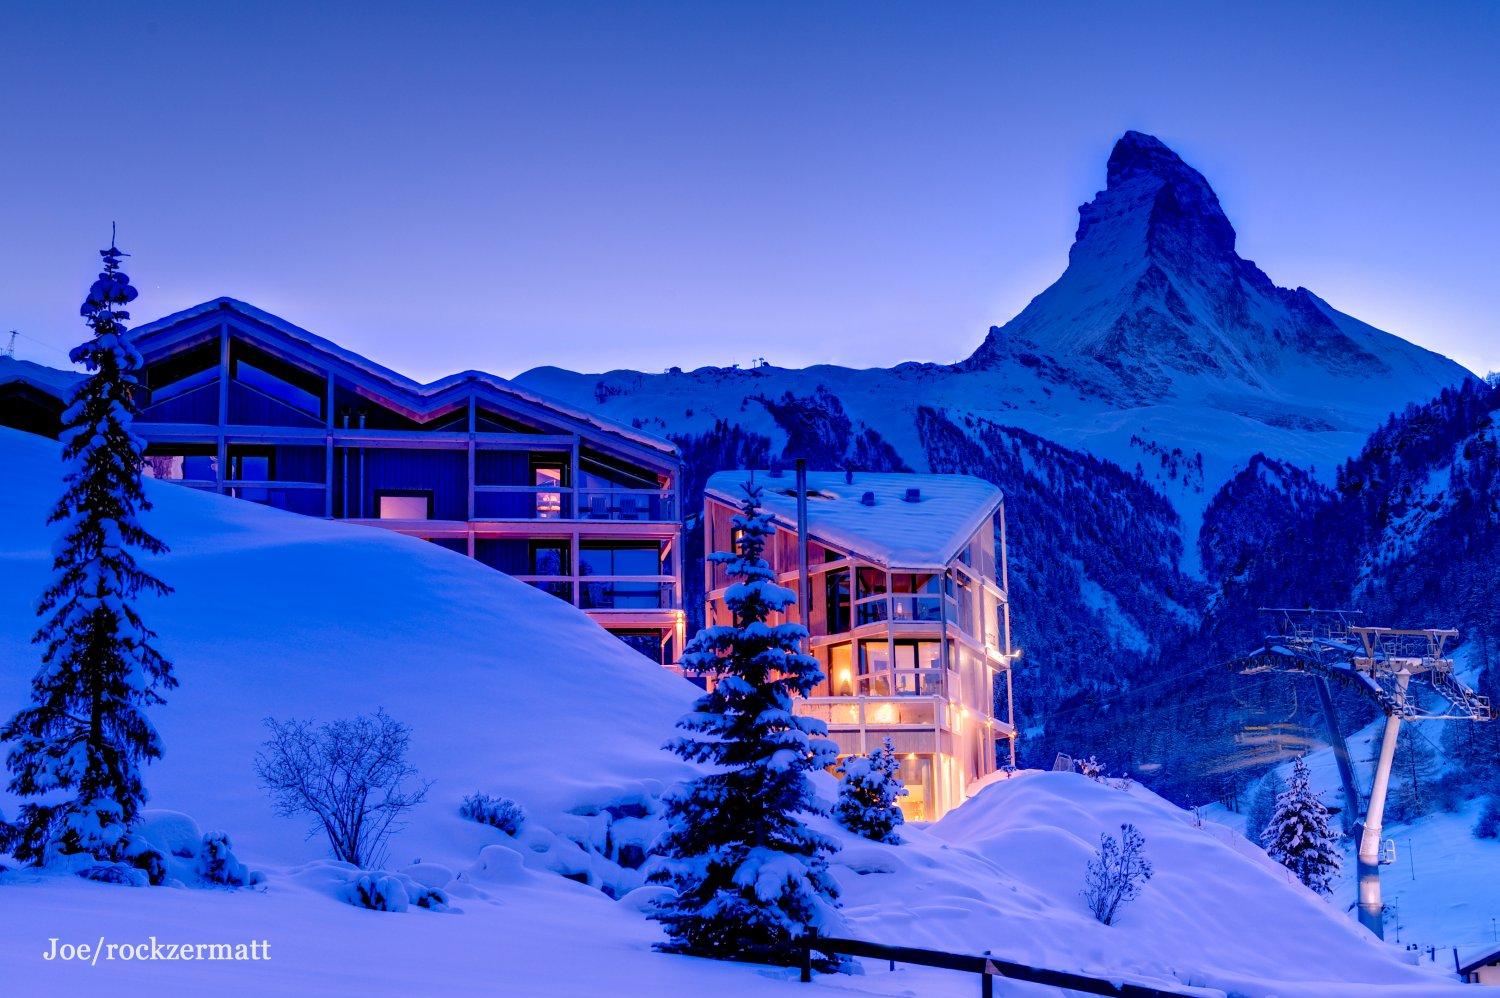 Отель в Альпах в горах